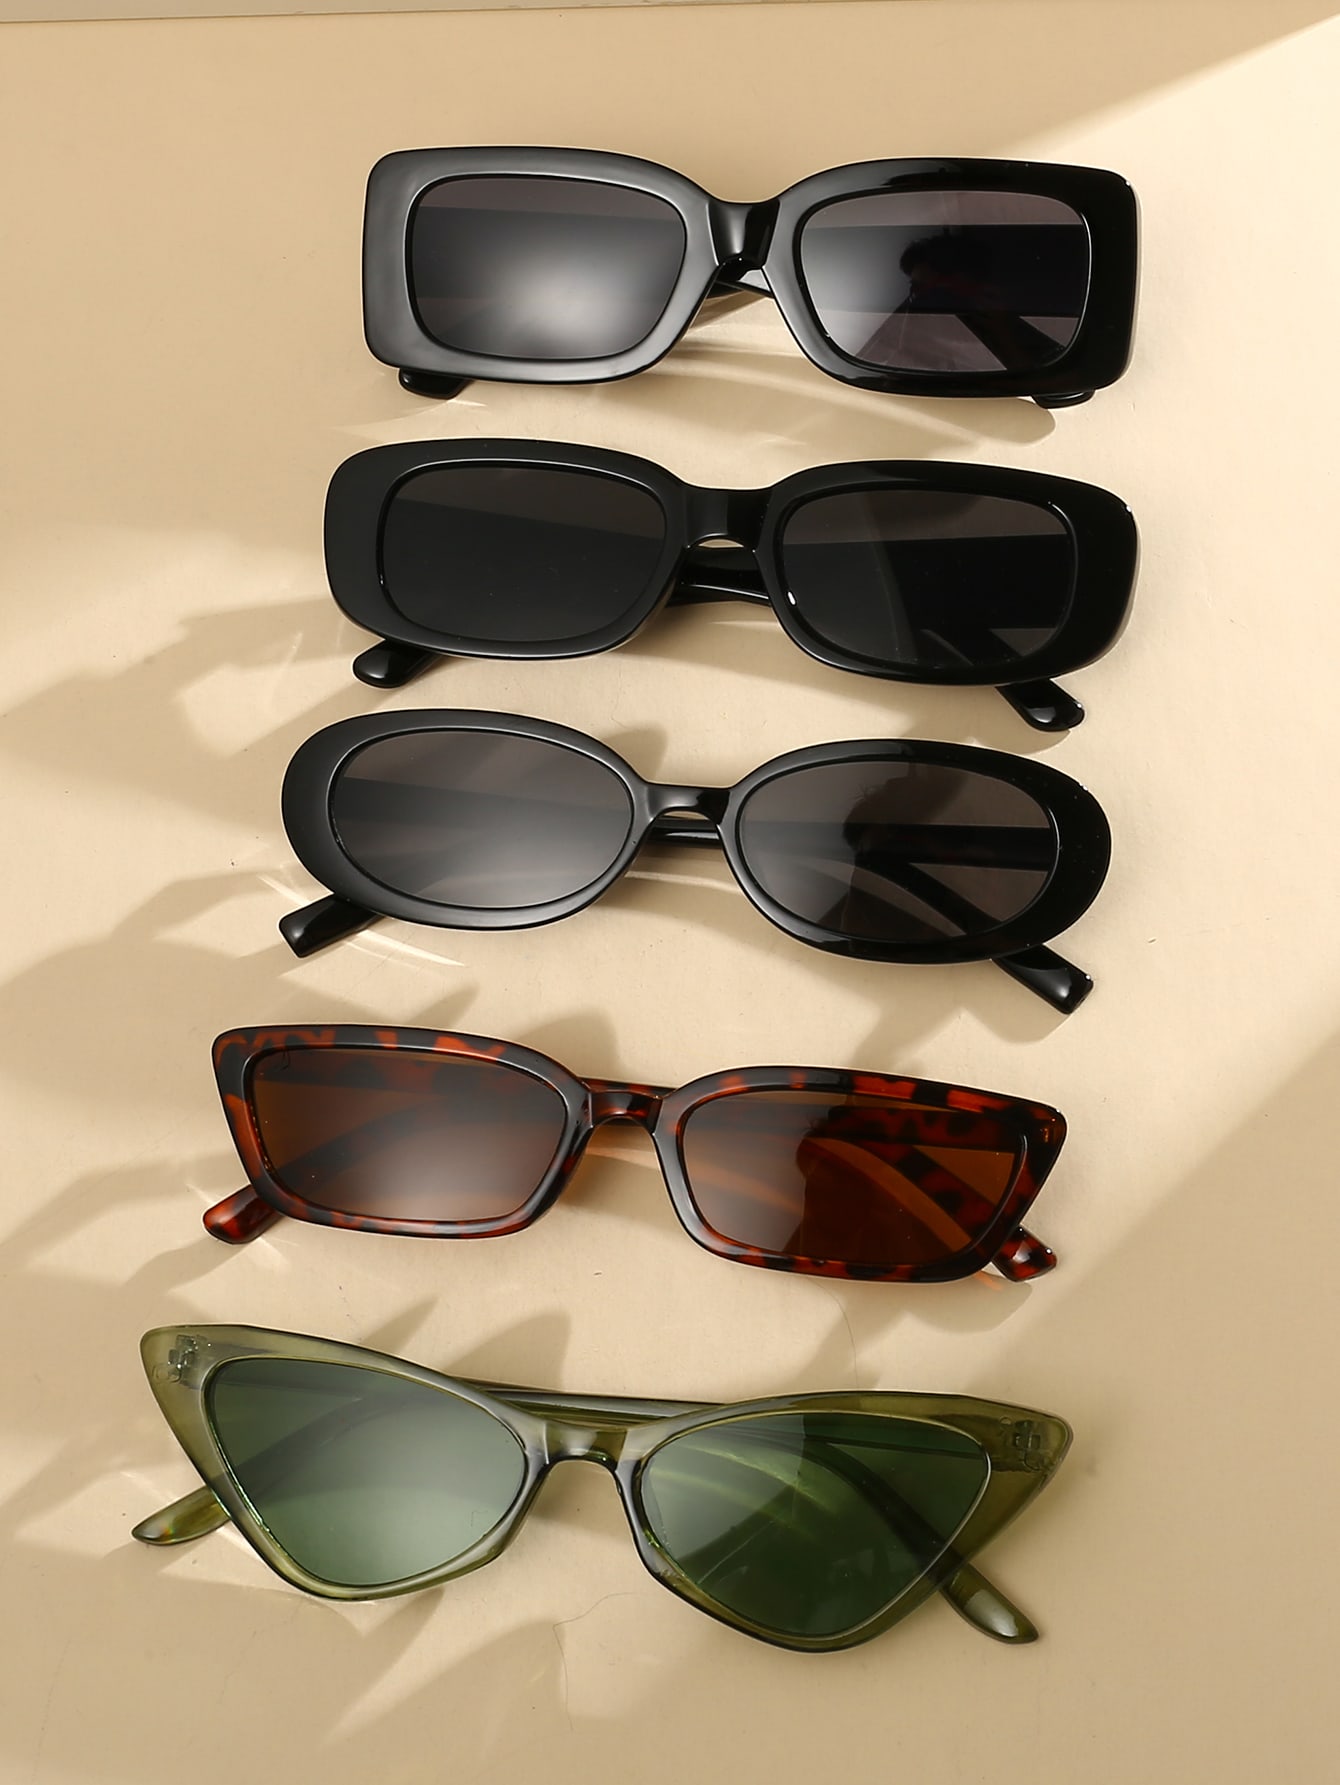 5 шт./компл. пляжные солнцезащитные очки кошачьего глаза/овальной/квадратной формы для защиты от солнца